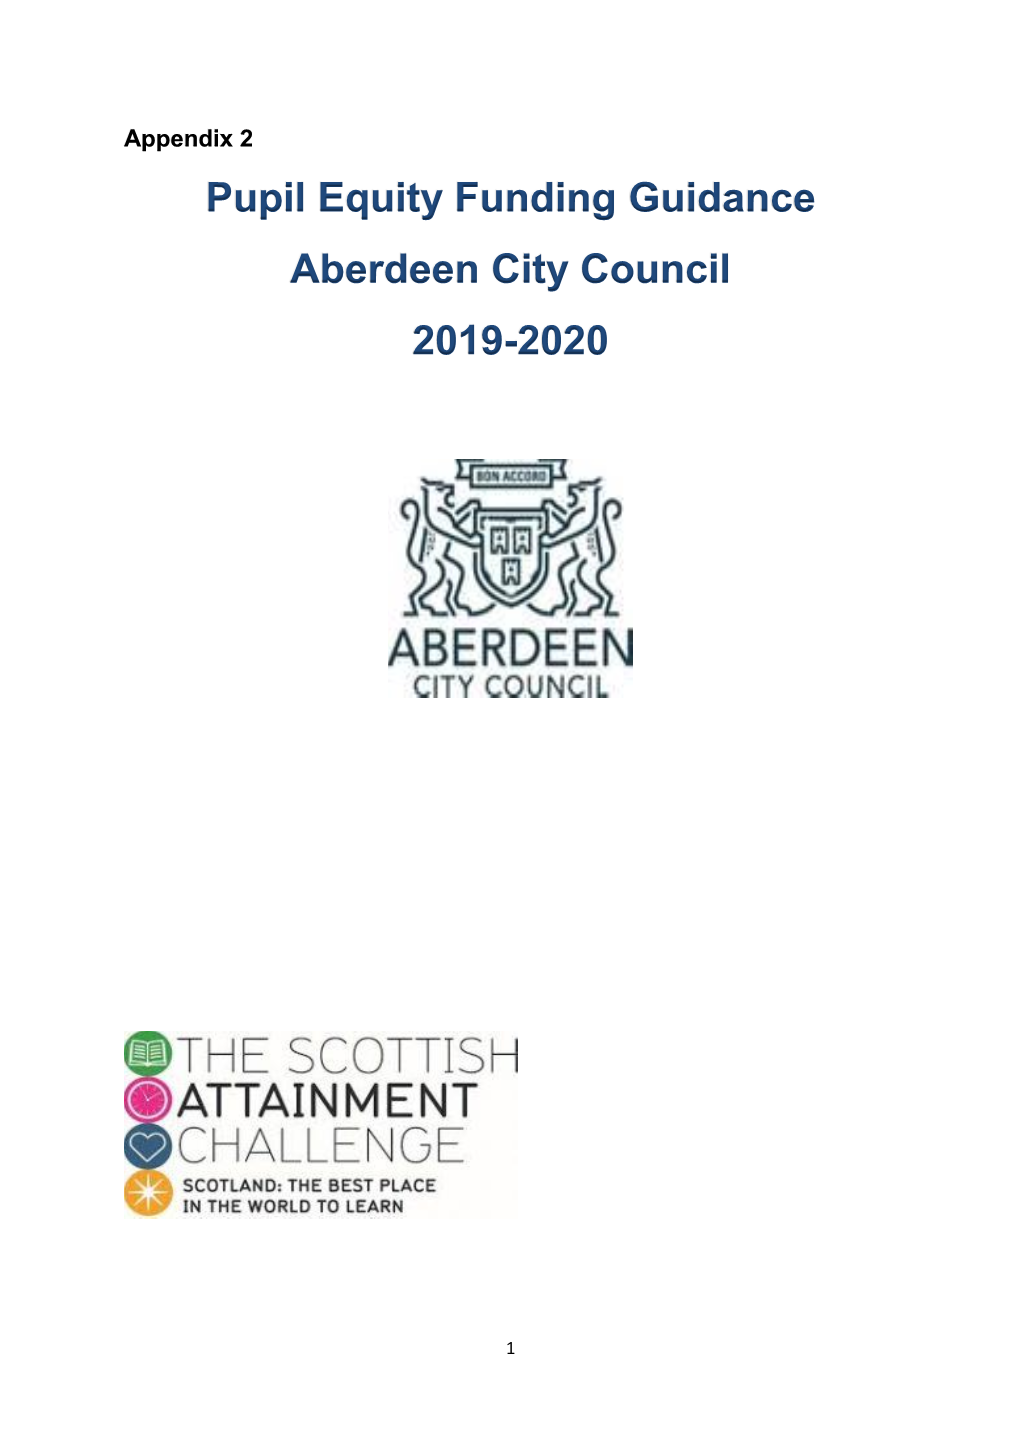 Pupil Equity Funding Guidance Aberdeen City Council 2019-2020